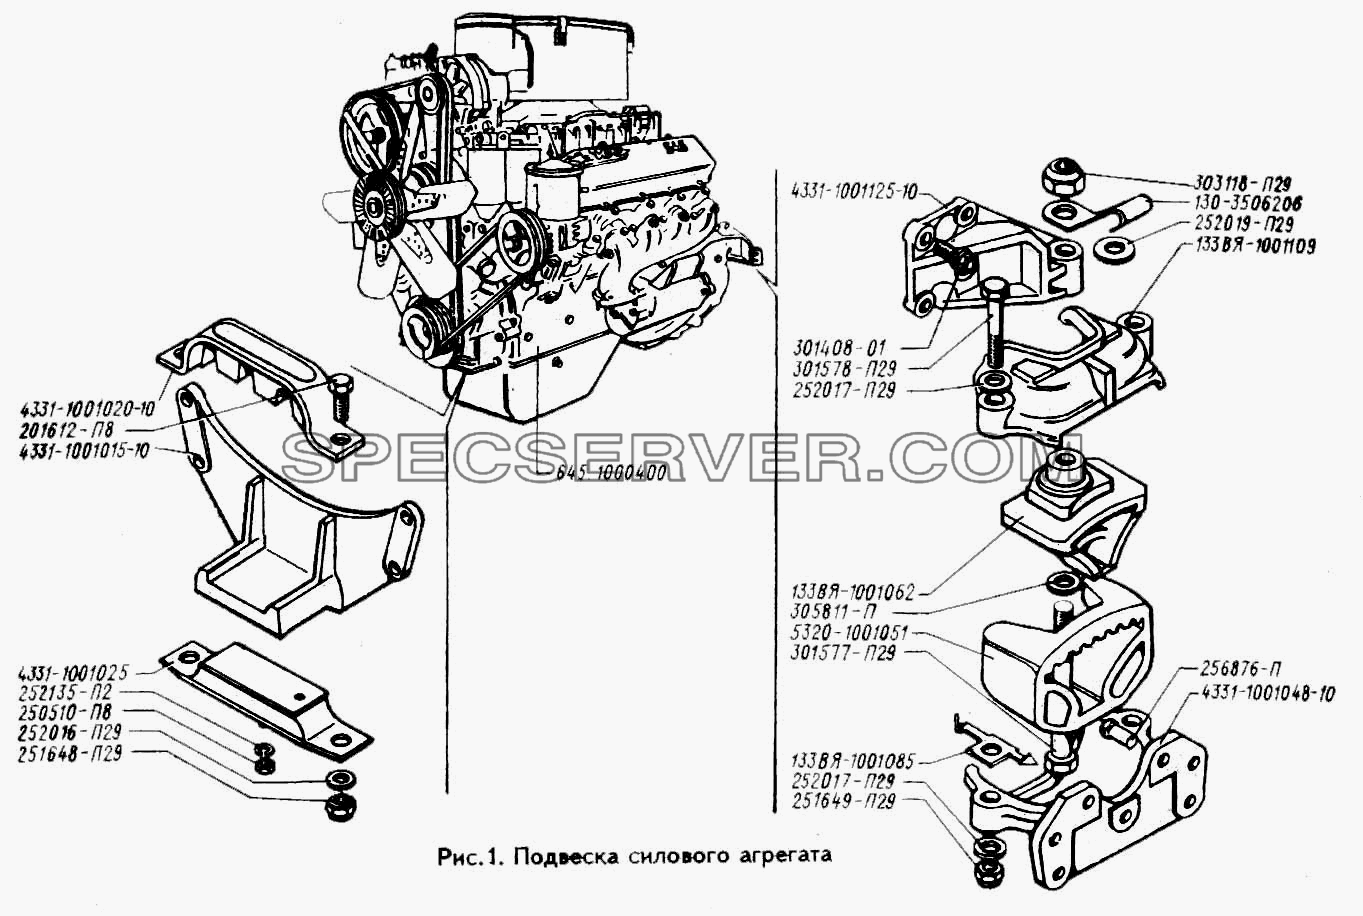 Подвеска силового агрегата для ЗИЛ 433100 (список запасных частей)